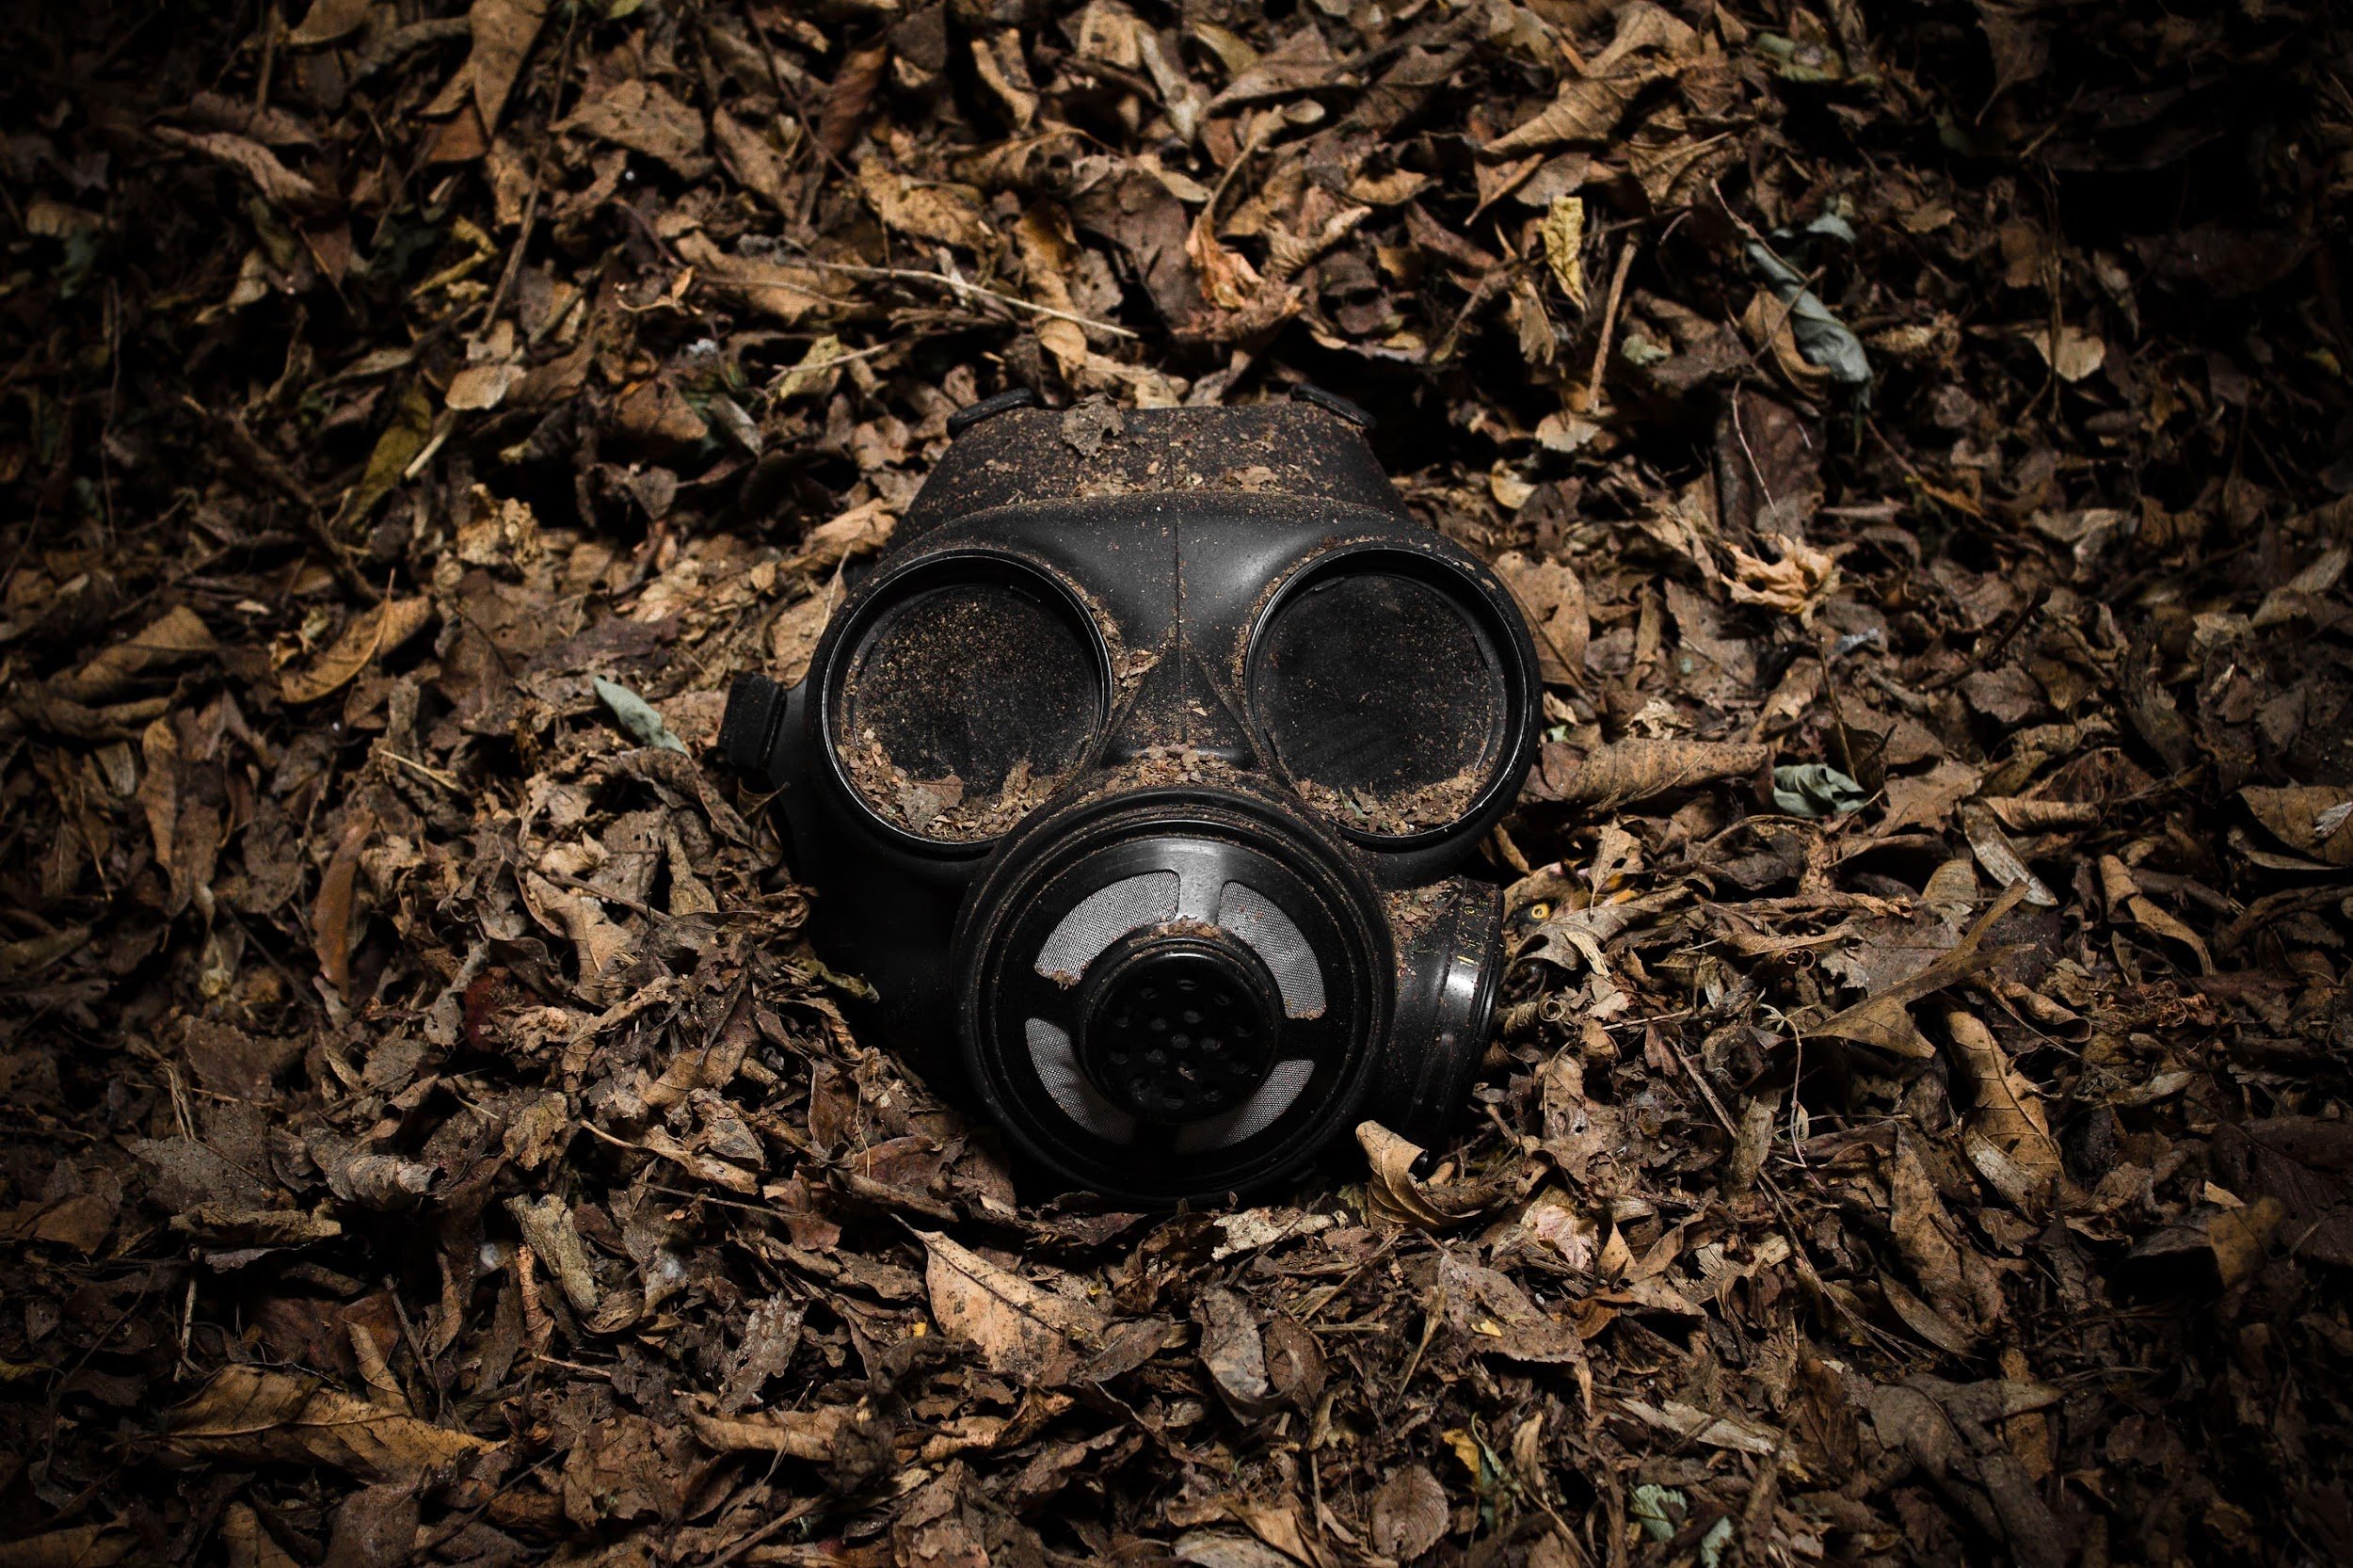 A emissão de gases tóxicos durante os conflitos armados contaminam o meio ambiente, gerando doenças na população local. (Fonte: Scott Rodgerson/Unsplash/Reprodução)